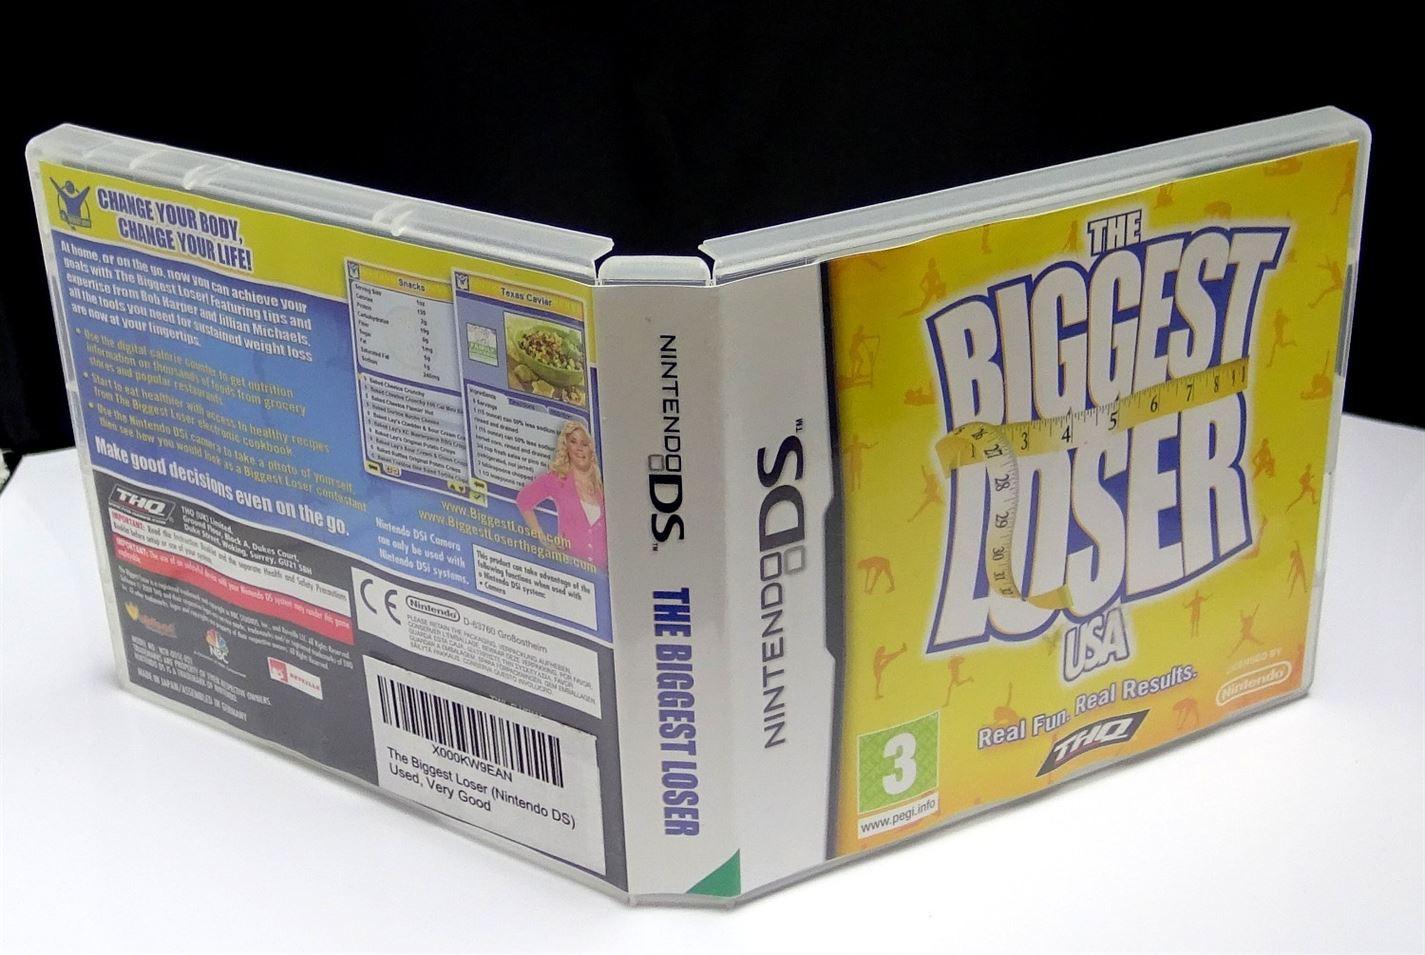 The Biggest Loser USA DS (Nintendo DS) - UK Seller